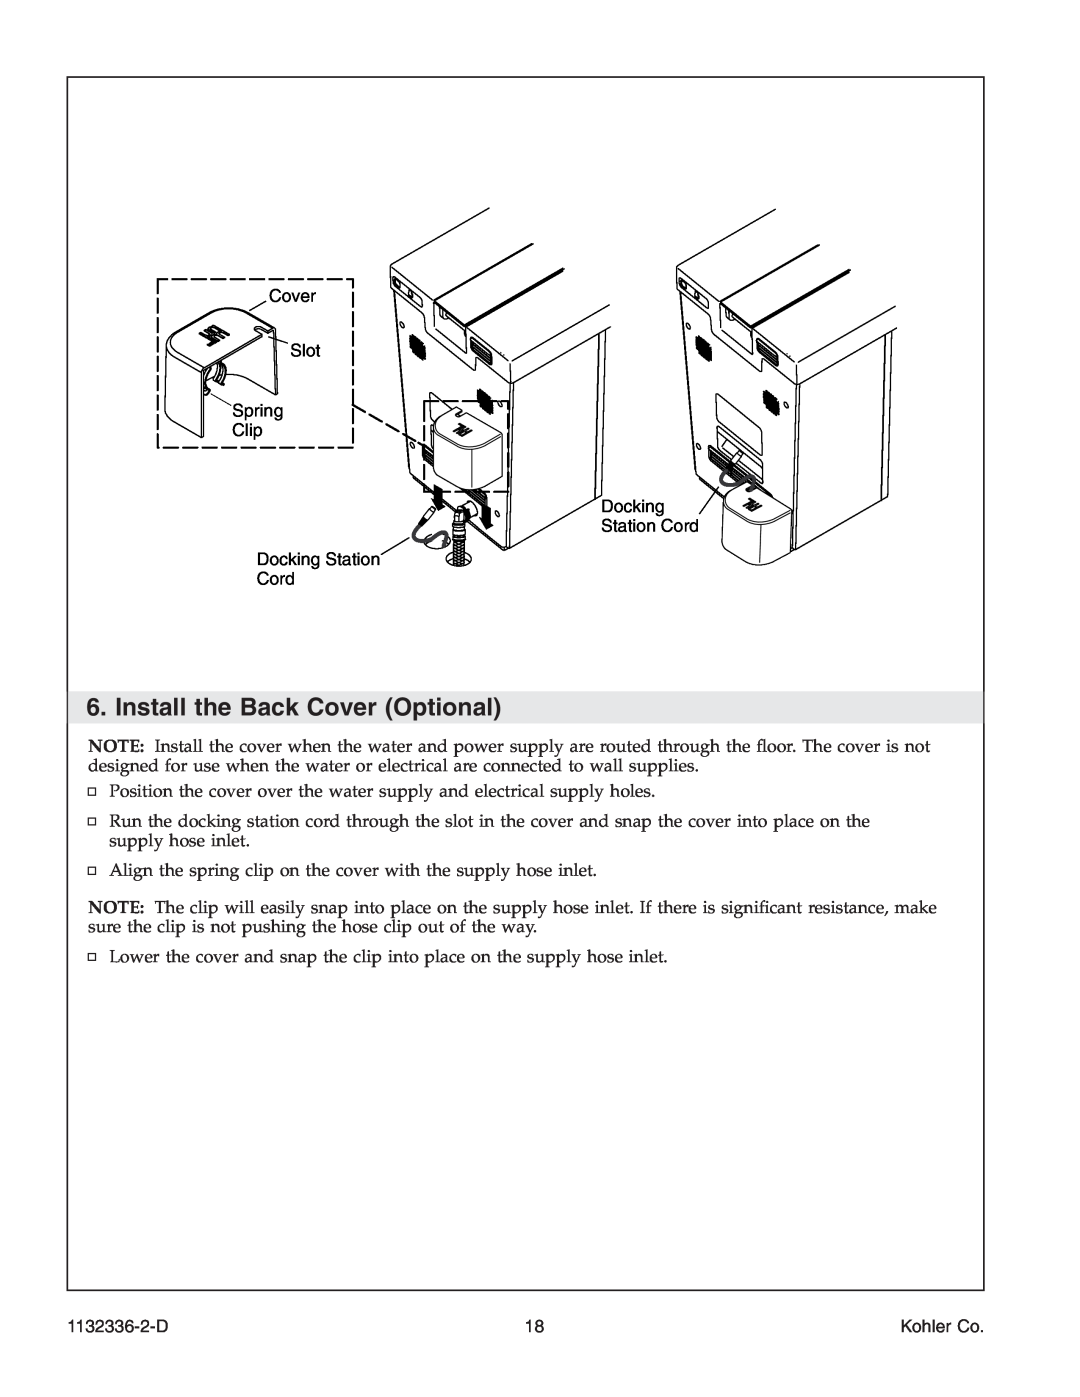 Kohler K-3900 manual Install the Back Cover Optional, 1132336-2-D, Kohler Co 